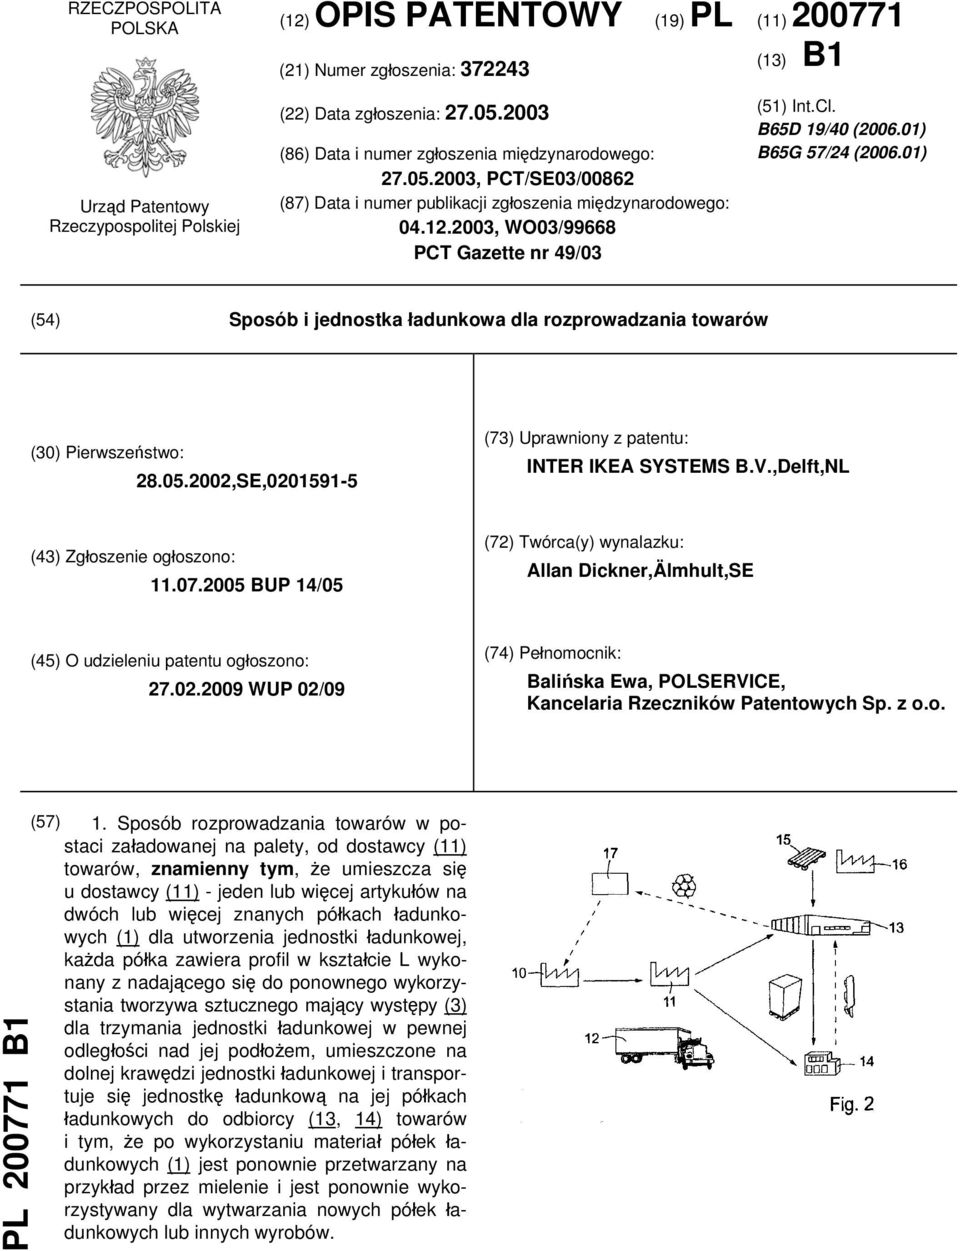 B65D 19/40 (2006.01) B65G 57/24 (2006.01) (54) Sposób i jednostka ładunkowa dla rozprowadzania towarów (30) Pierwszeństwo: 28.05.2002,SE,0201591-5 (73) Uprawniony z patentu: INTER IKEA SYSTEMS B.V.